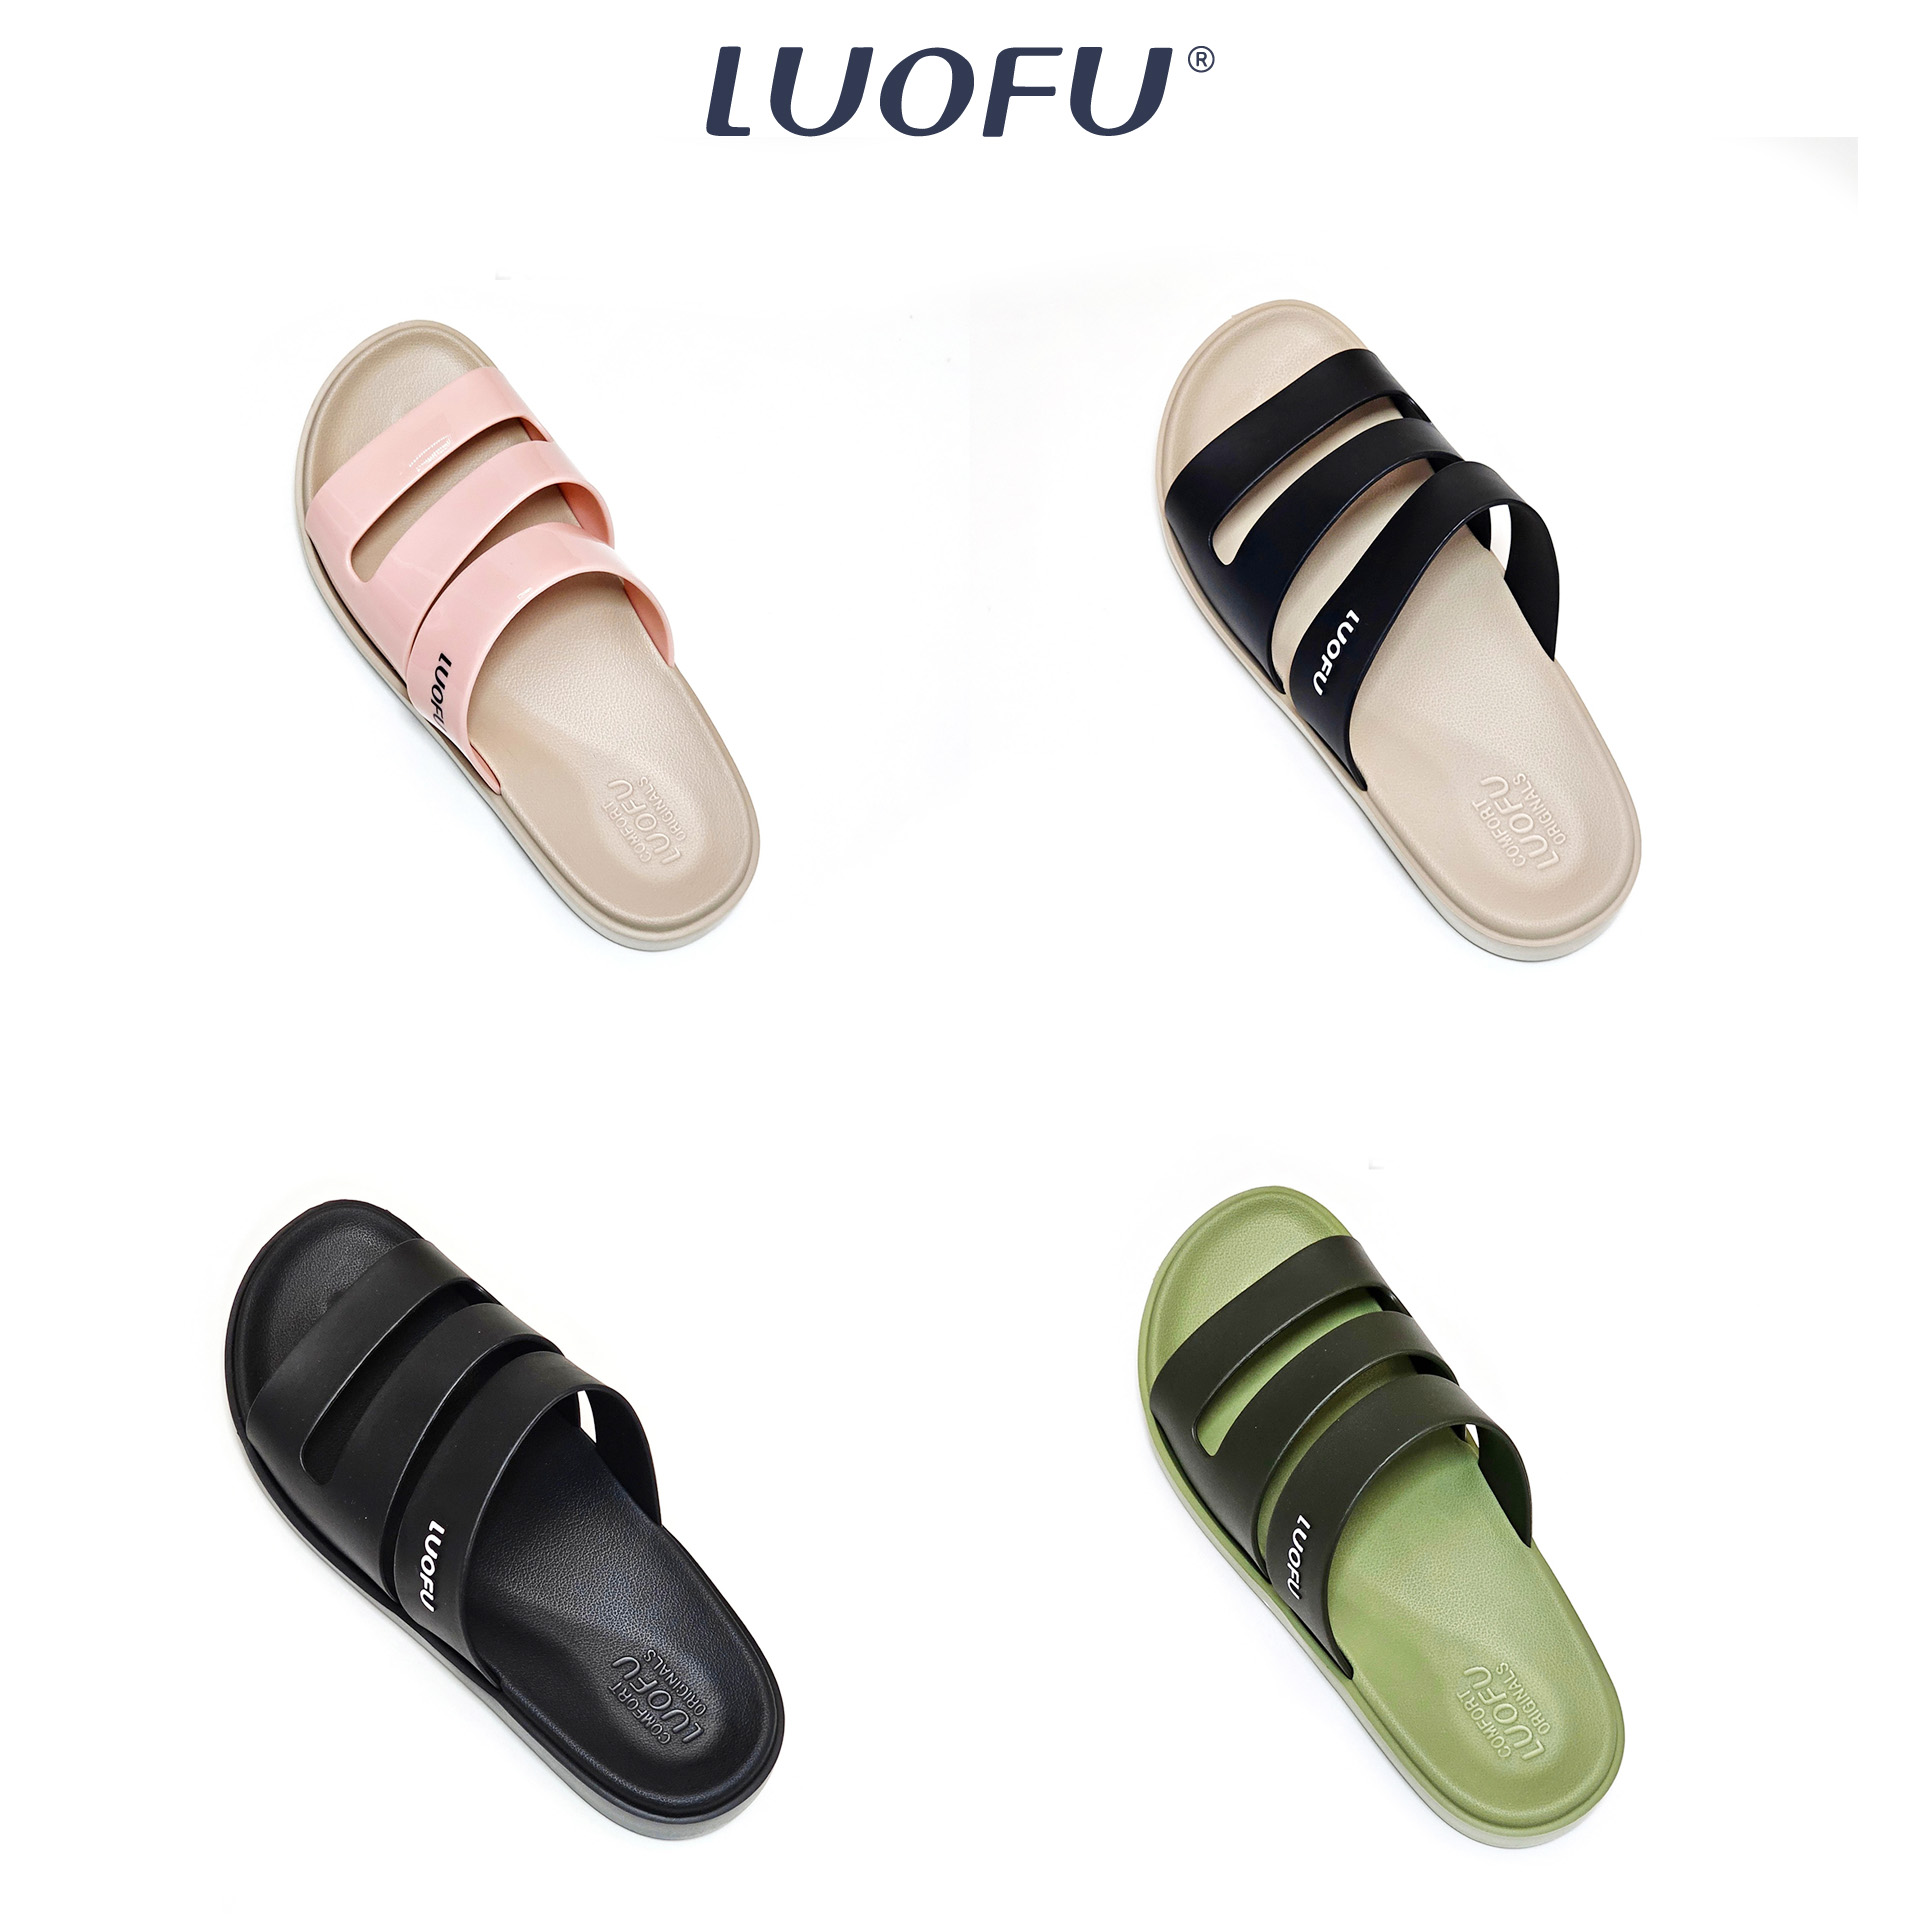 LUOFU รองเท้าแตะผู้หญิง รองเท้าลำลอง สวมใส่สบายเท้า รองเท้าแฟชั่น  เบอร์ 36-44 รหัส E6222